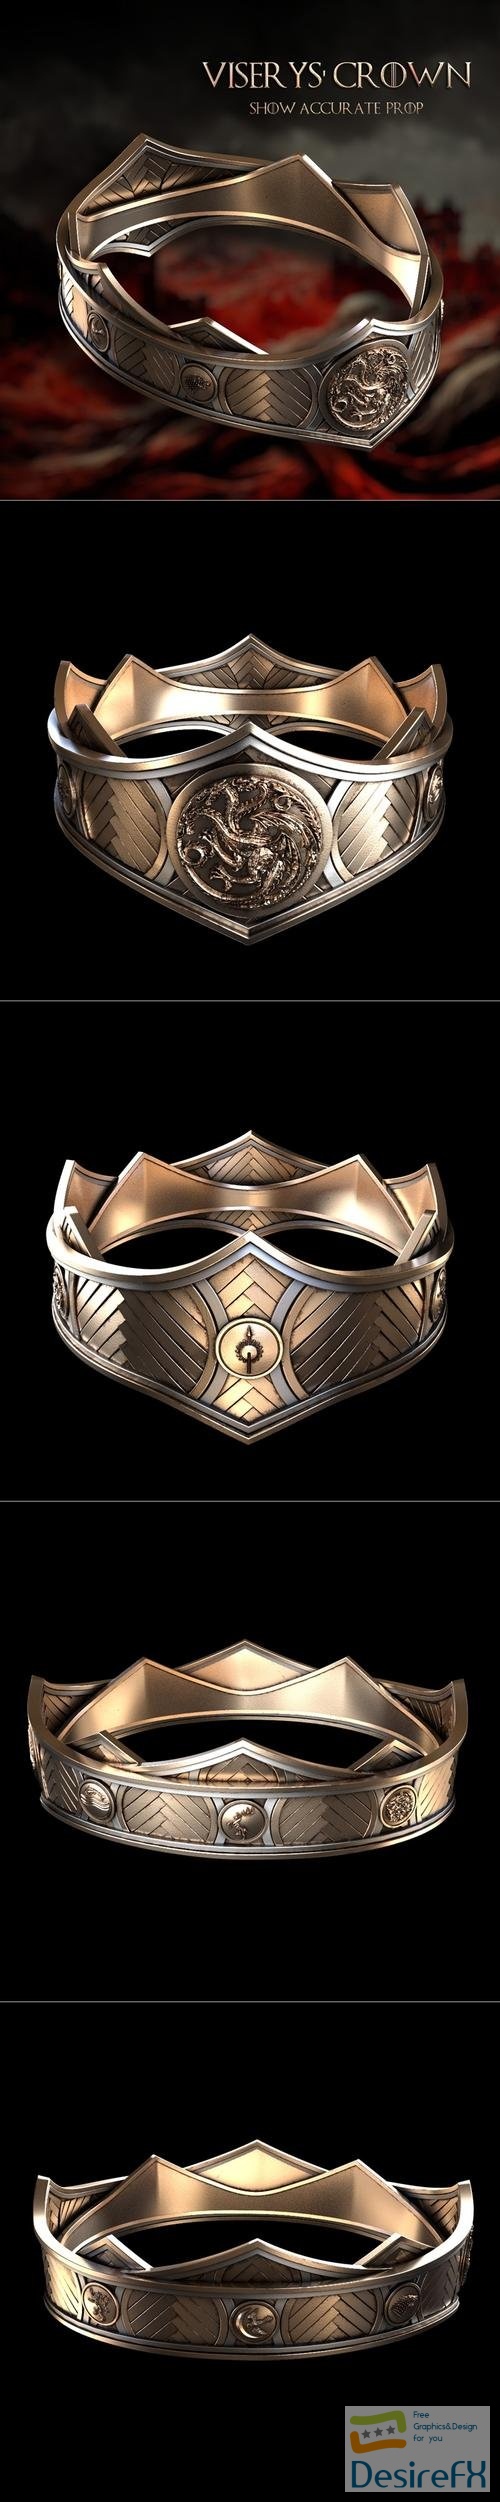 Crown of Viserys Targaryen - House of the Dragon – 3D Print